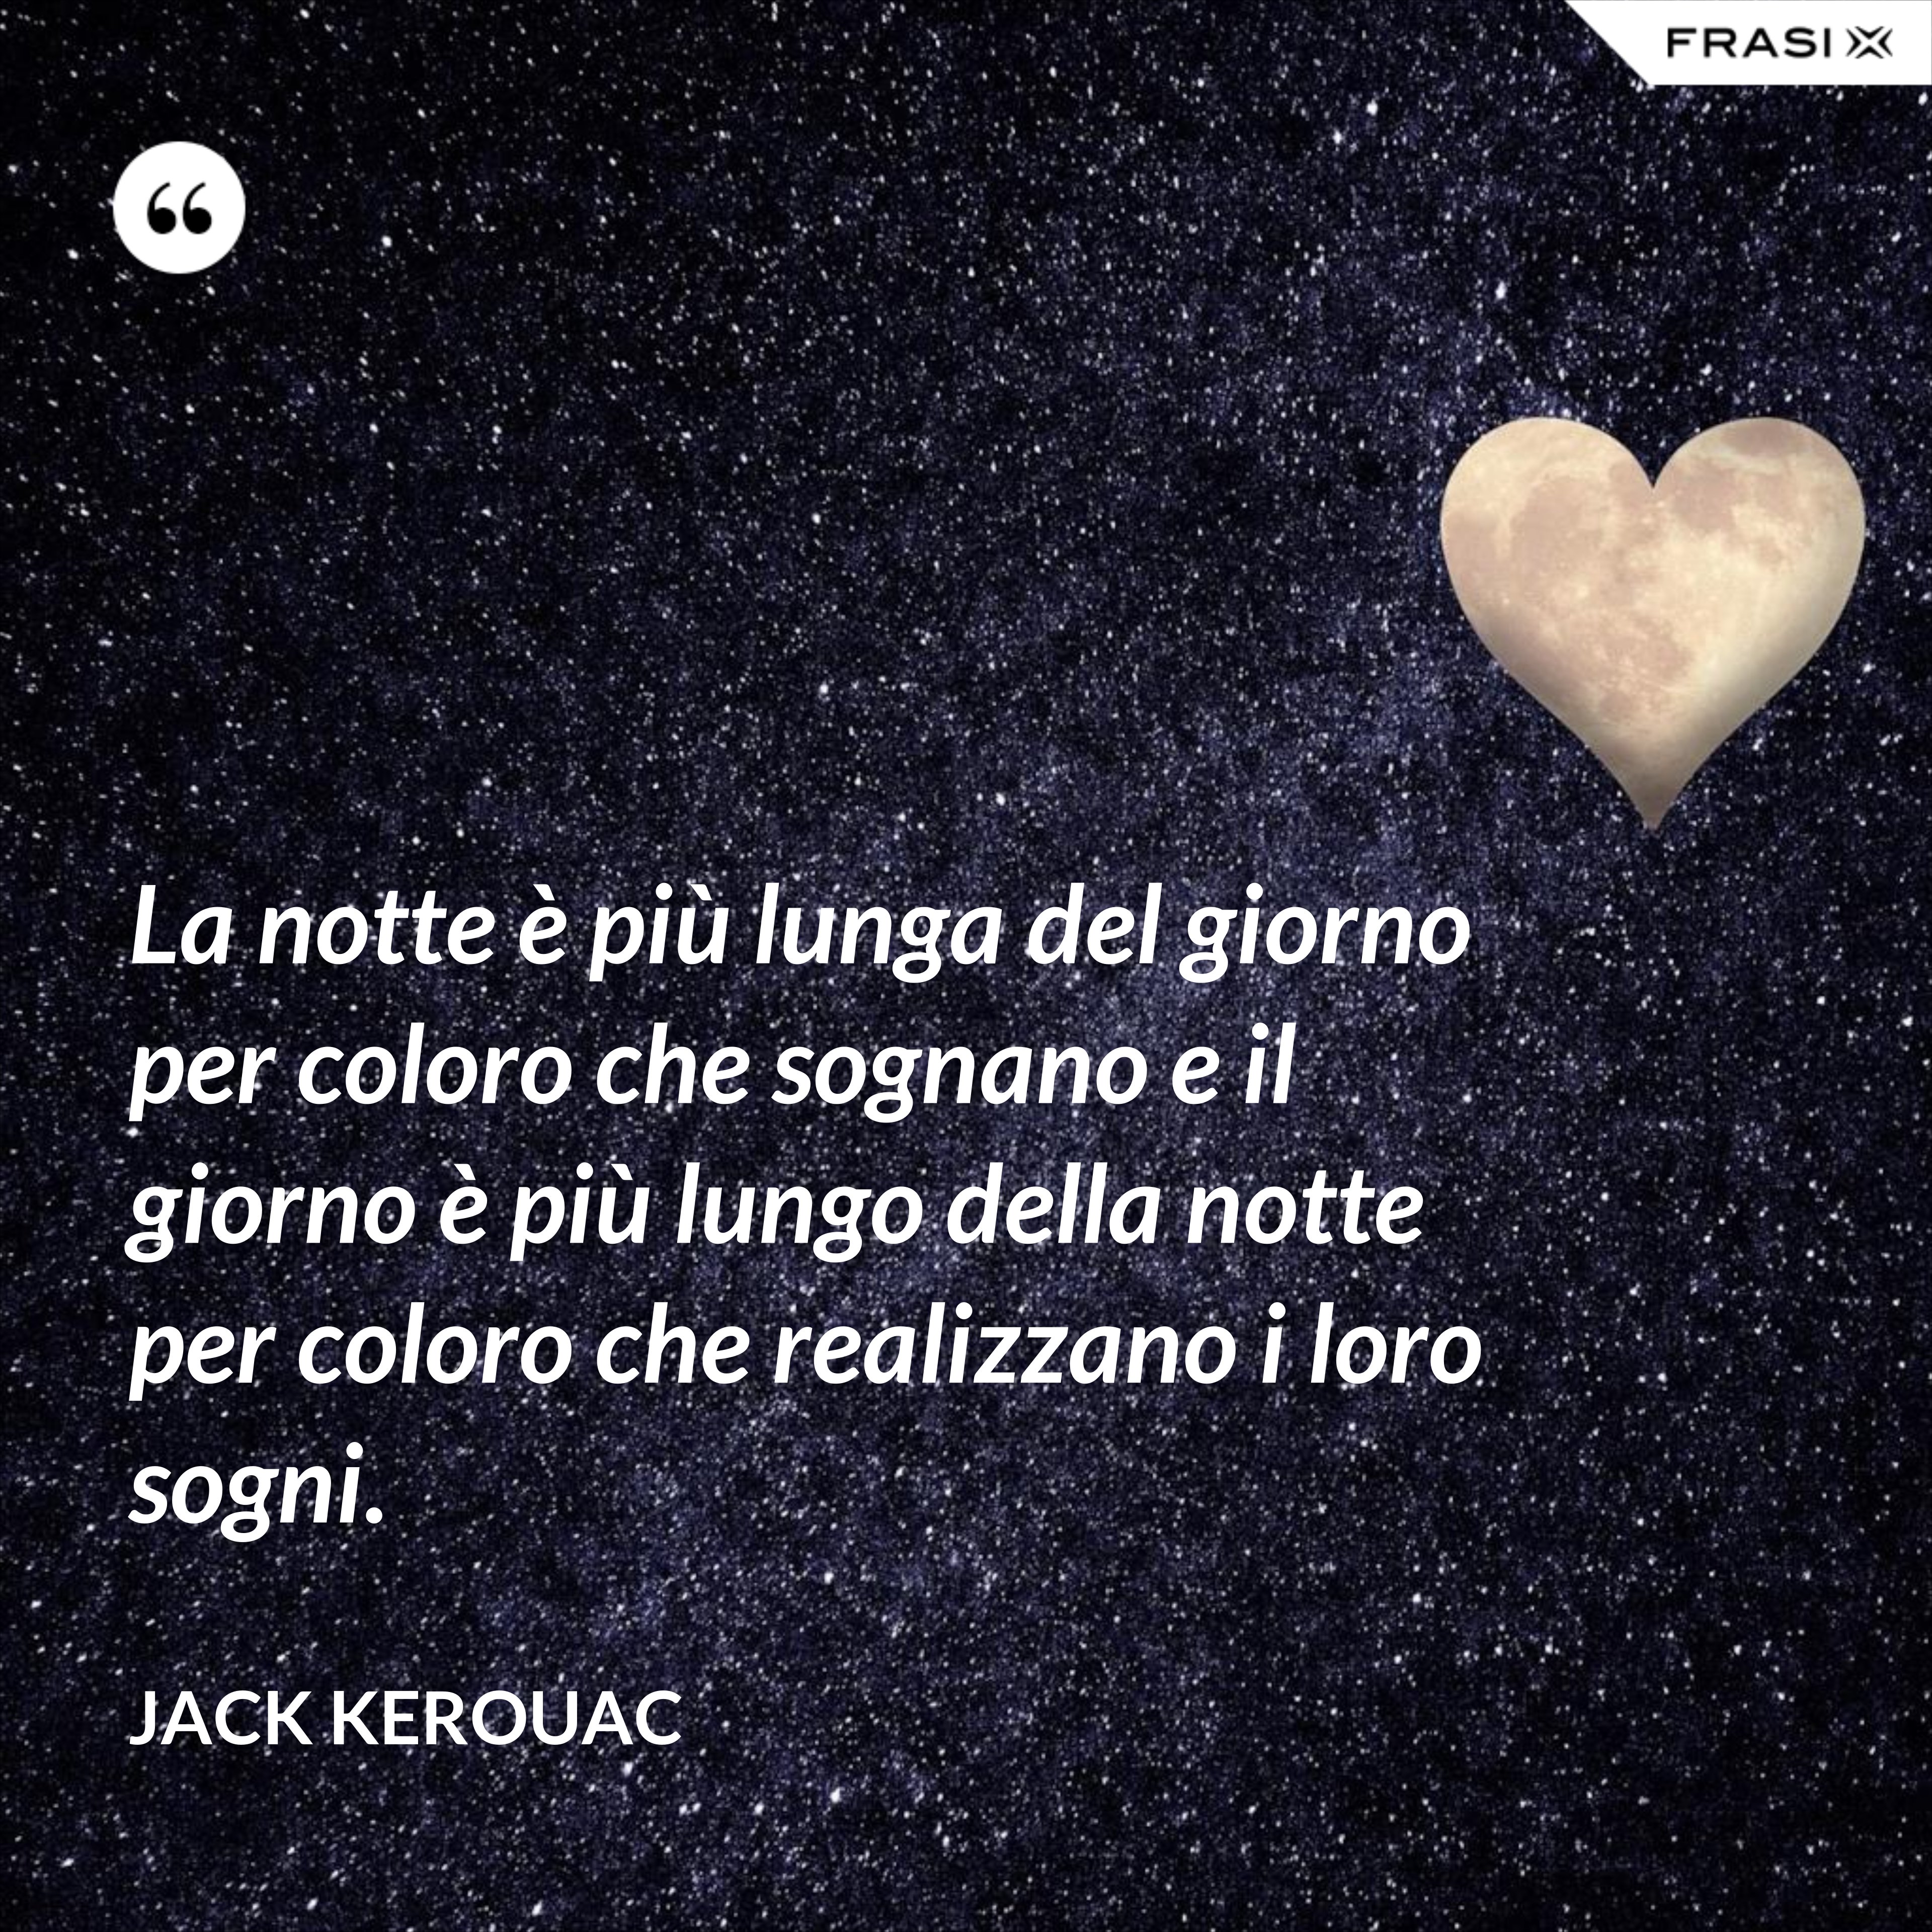 La notte è più lunga del giorno per coloro che sognano e il giorno è più lungo della notte per coloro che realizzano i loro sogni. - Jack Kerouac